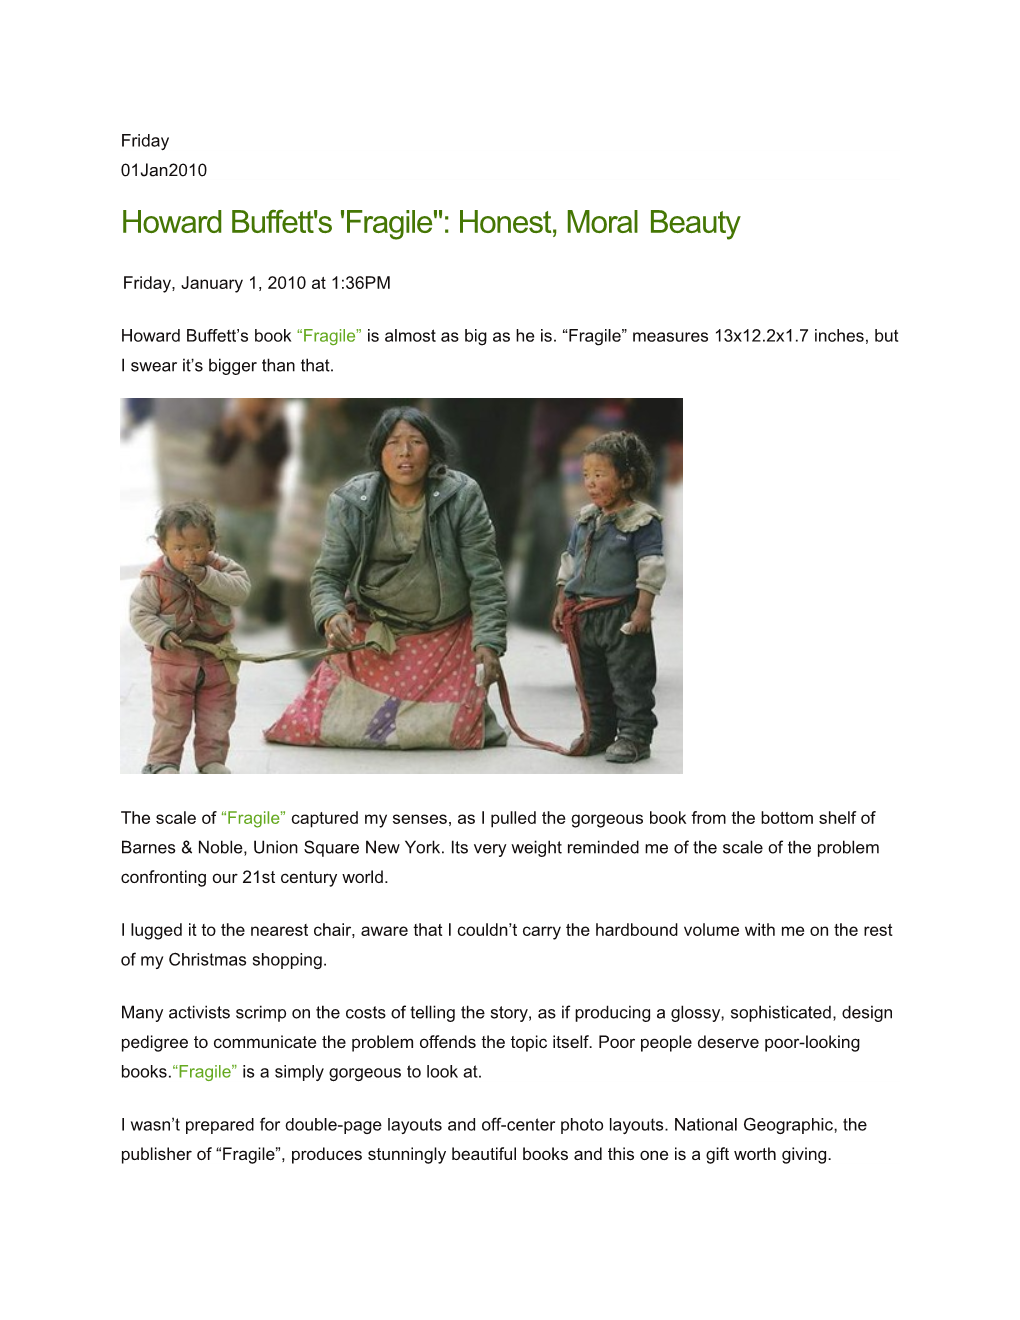 Howard Buffett's 'Fragile : Honest, Moralbeauty